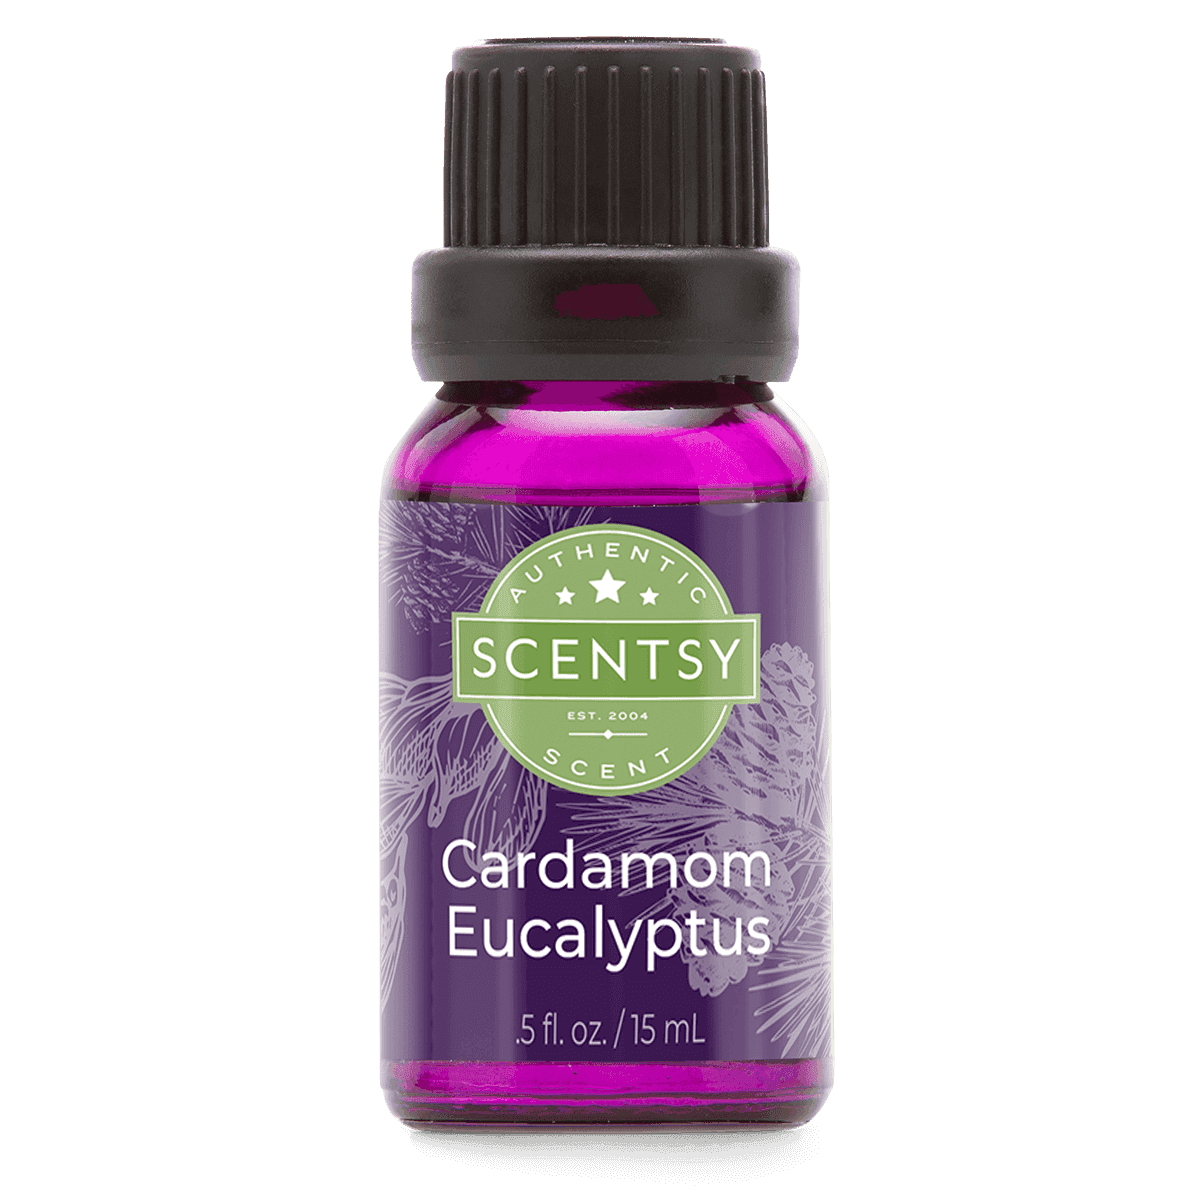 Cardamom Eucalyptus Natural Oil Blend